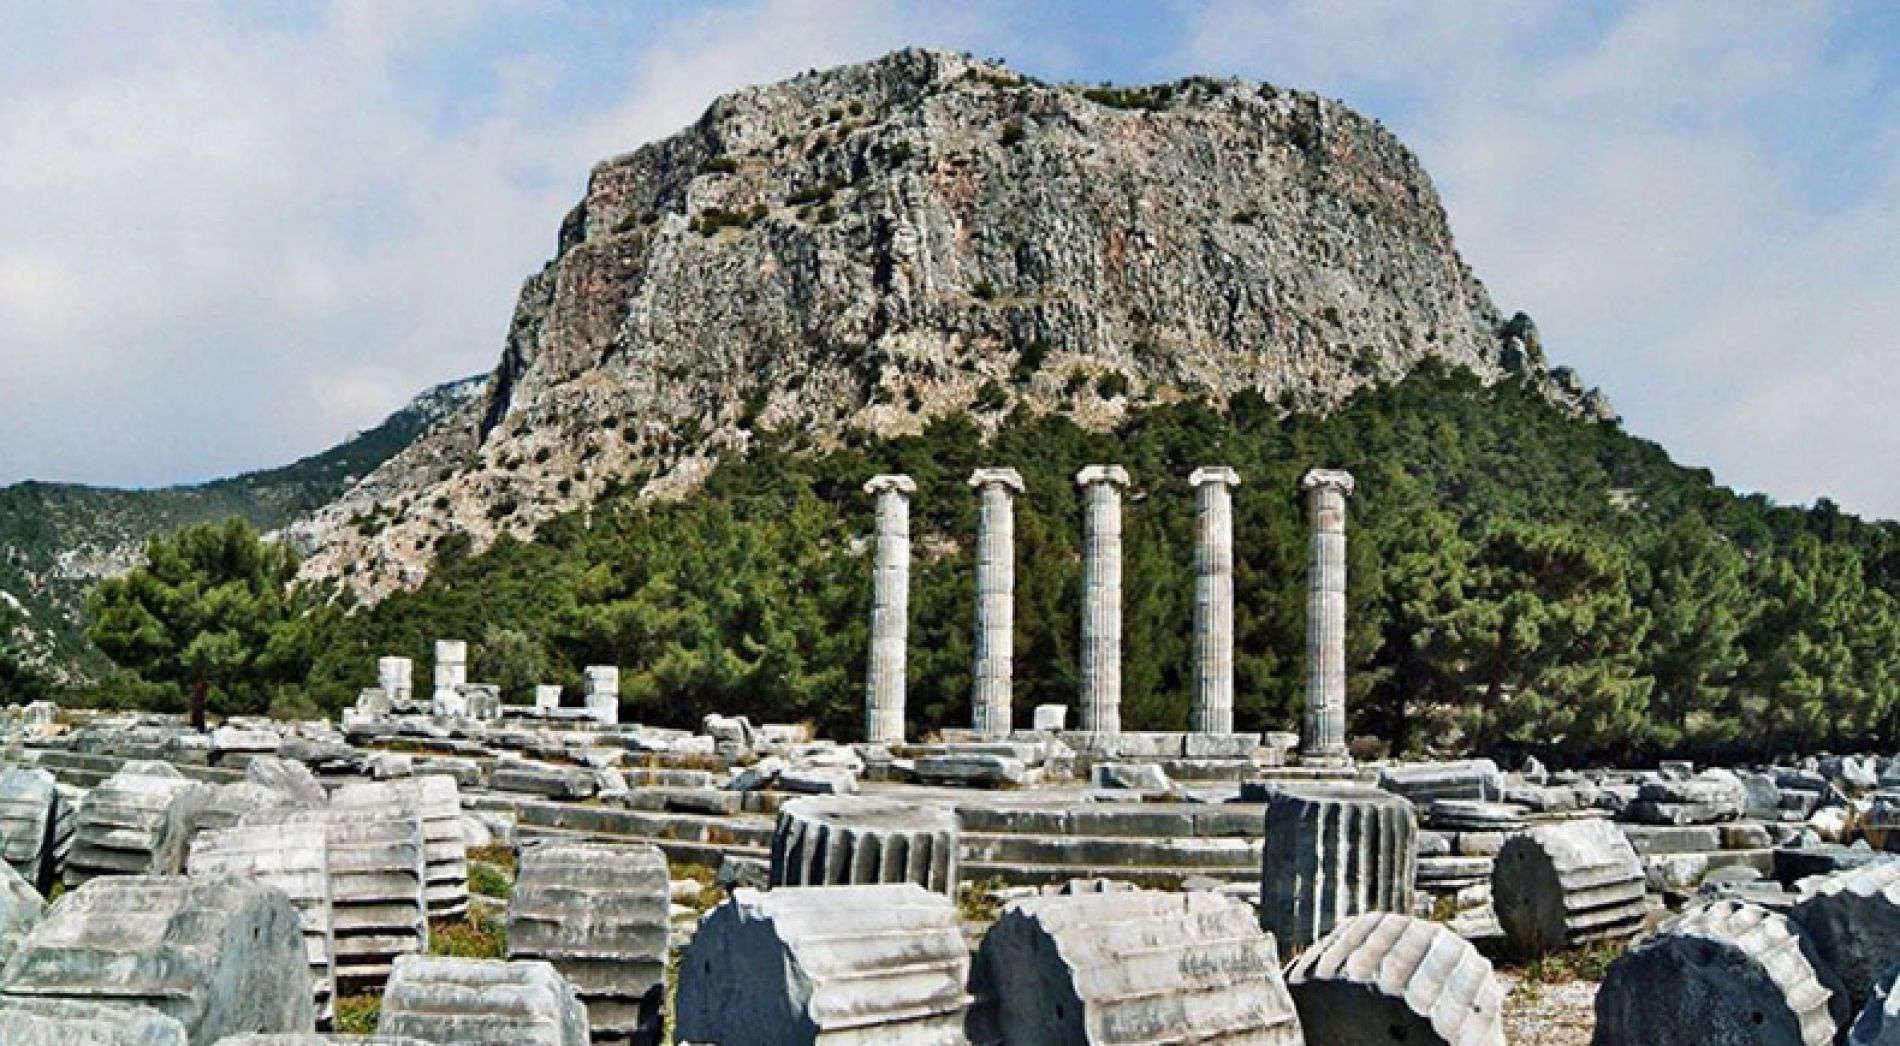 Philosophers Stone Tour from izmir - 3